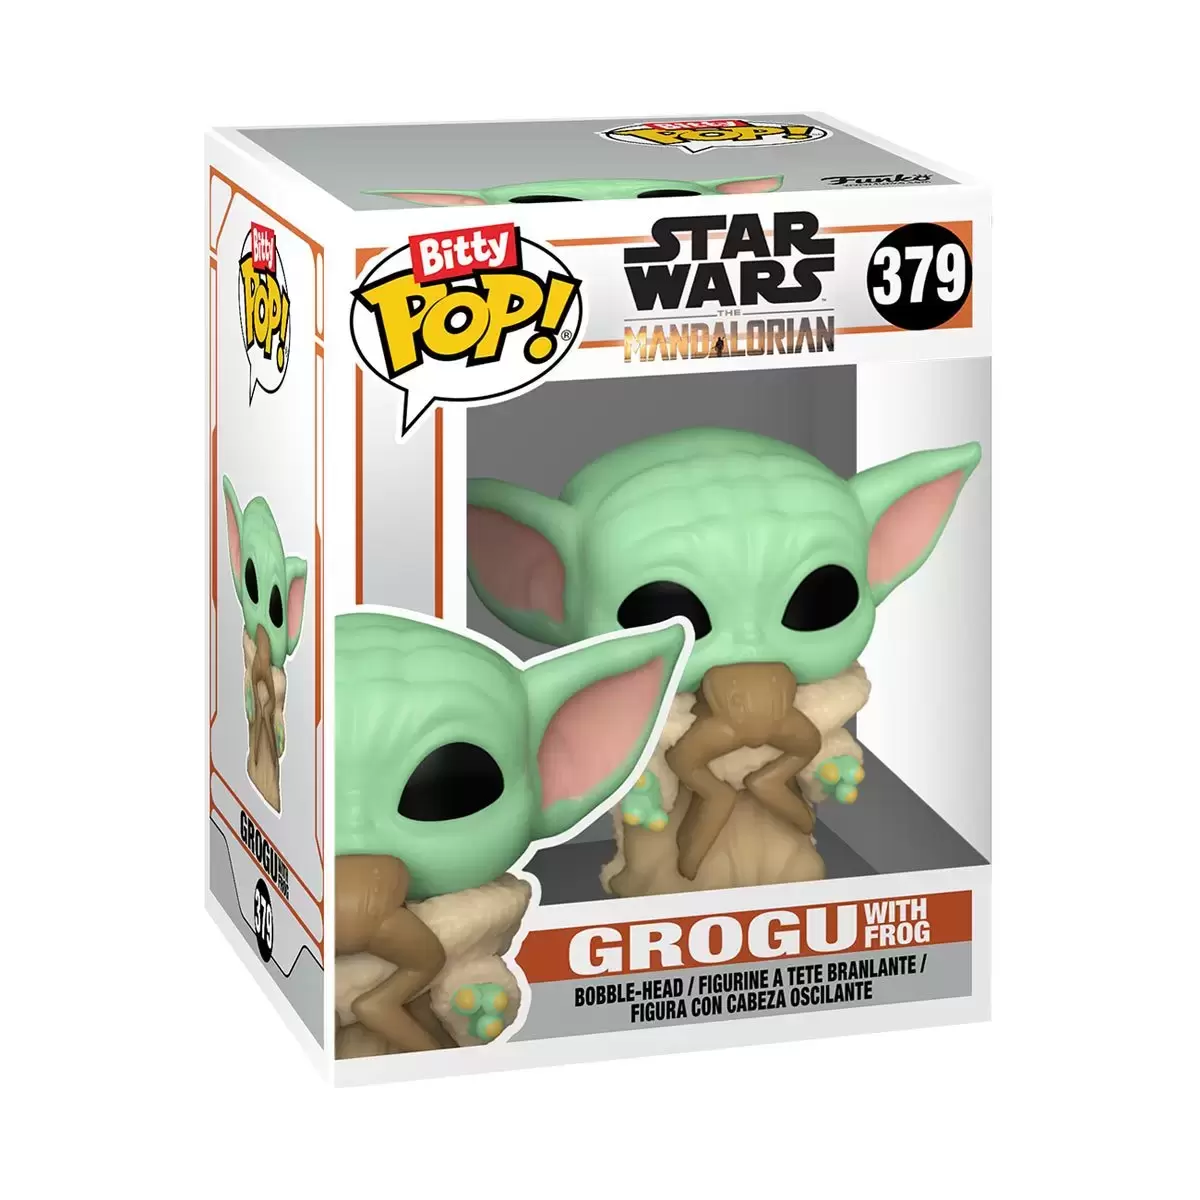 Bitty POP! - Star Wars - Grogu with Frog